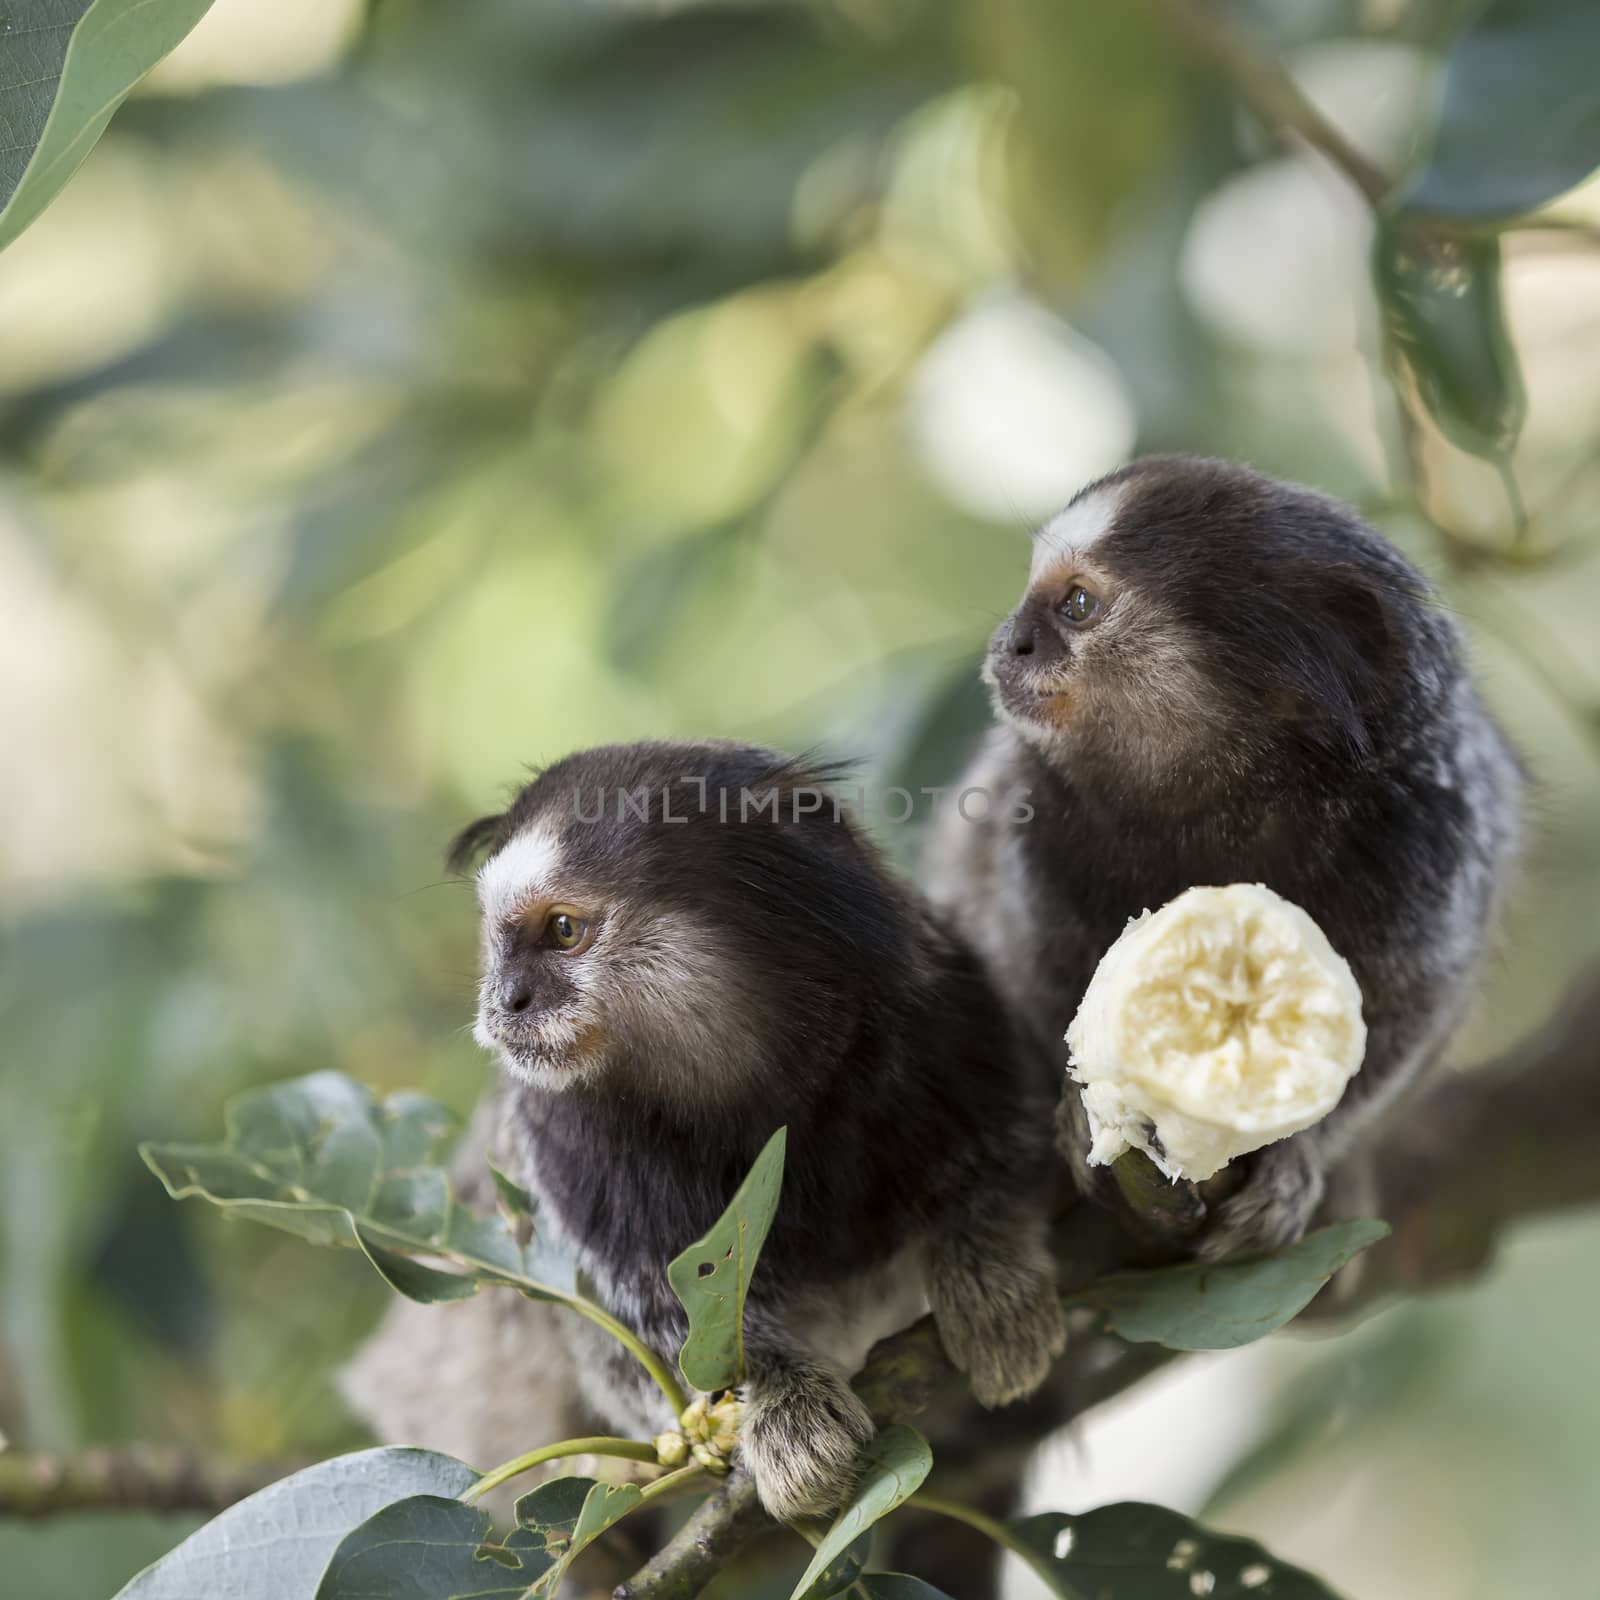 Two marmoset monkeys eating a banana